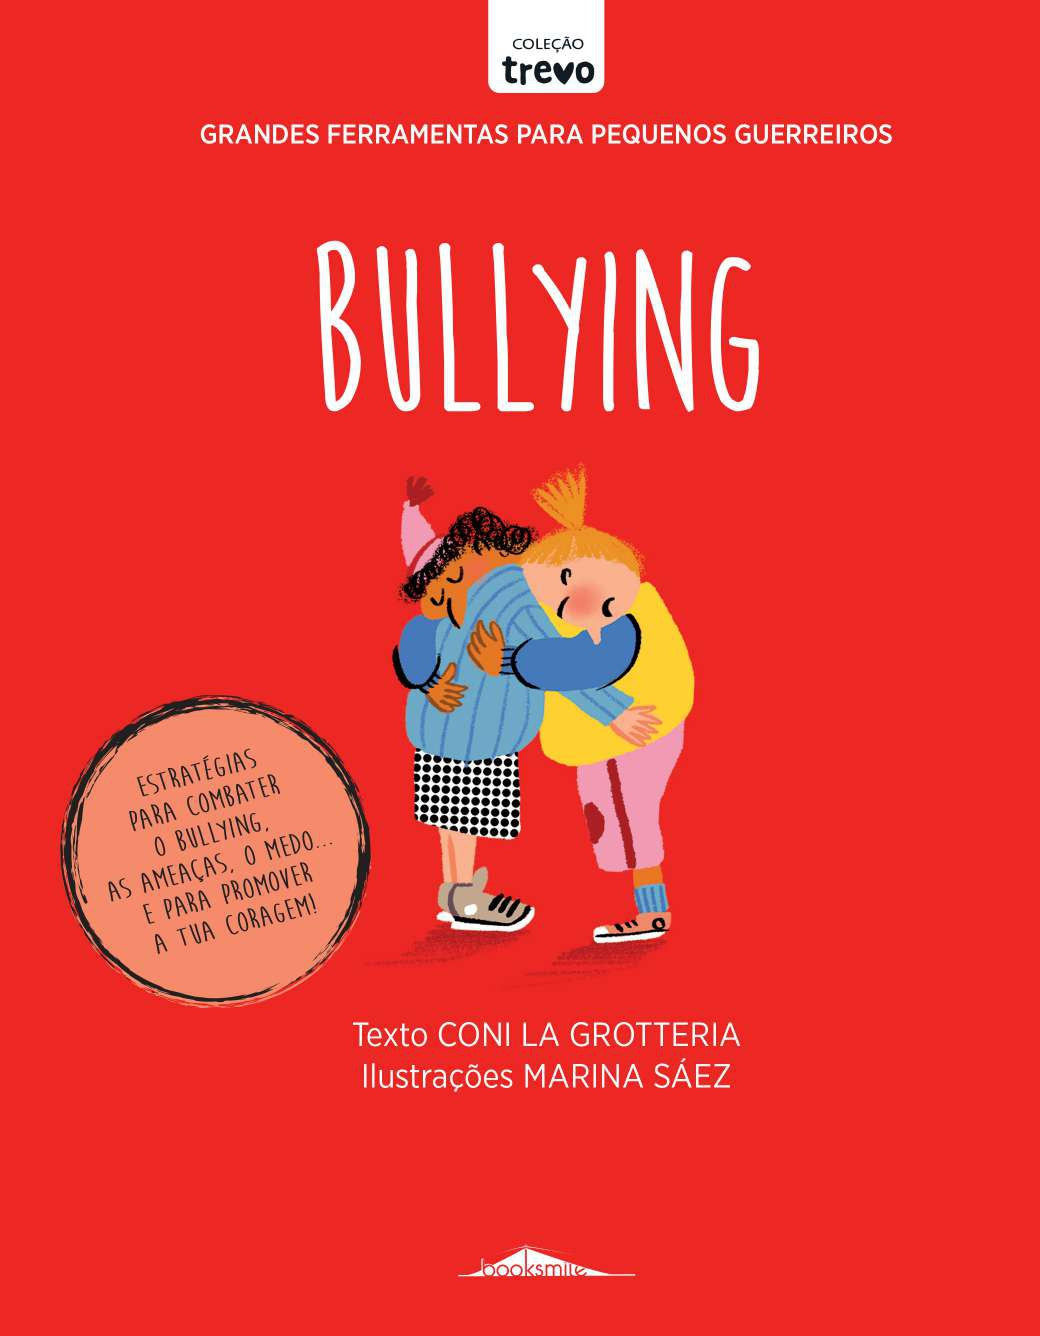 Grandes Ferramentas para Pequenos Guerreiros: Bullying